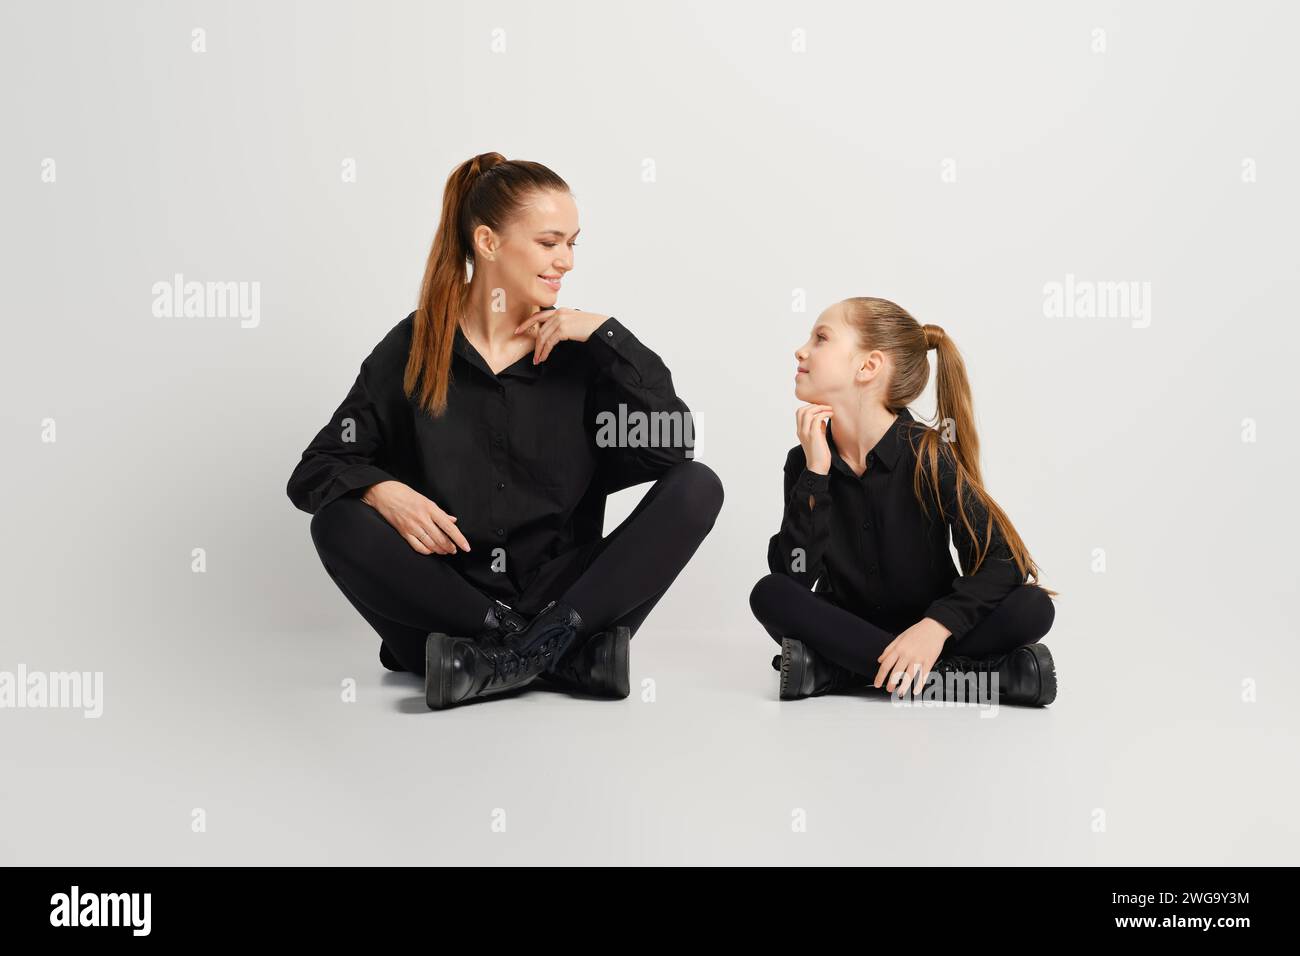 Mère et sa fille sont assises sur un fond blanc portant une chemise noire élégante similaire, des collants et des bottes. Ils se regardent avec le sourire Banque D'Images